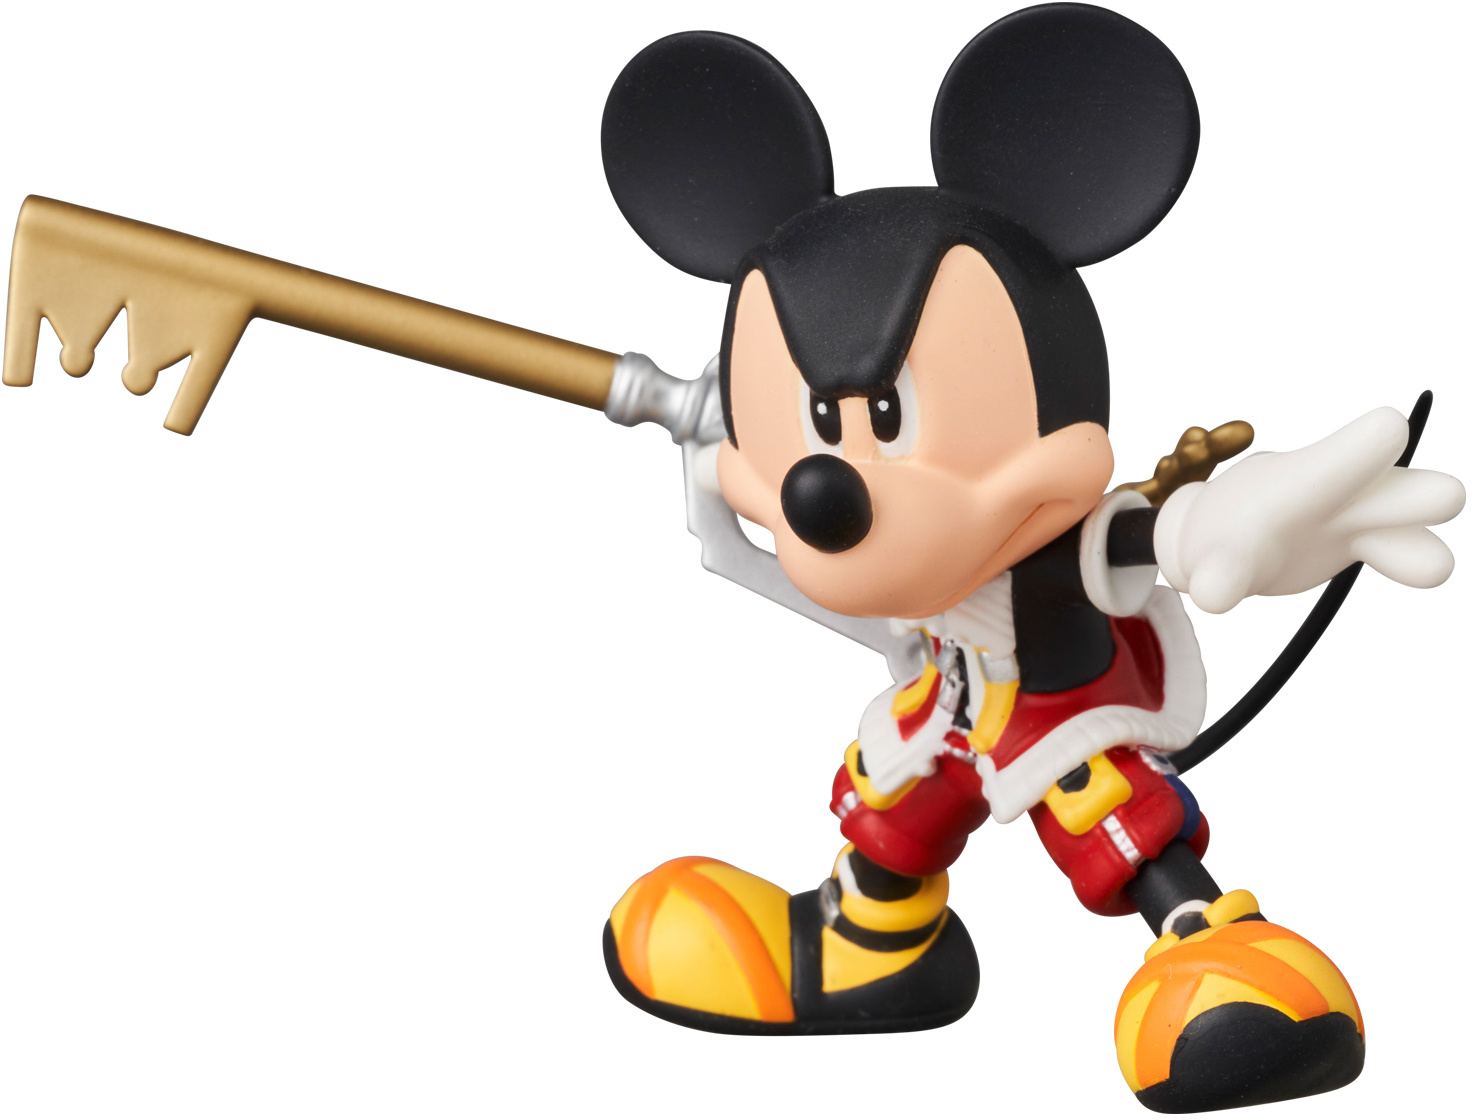 Ultra Detail Figure No. 786 Kingdom Hearts II: Mickey Mouse Medicom